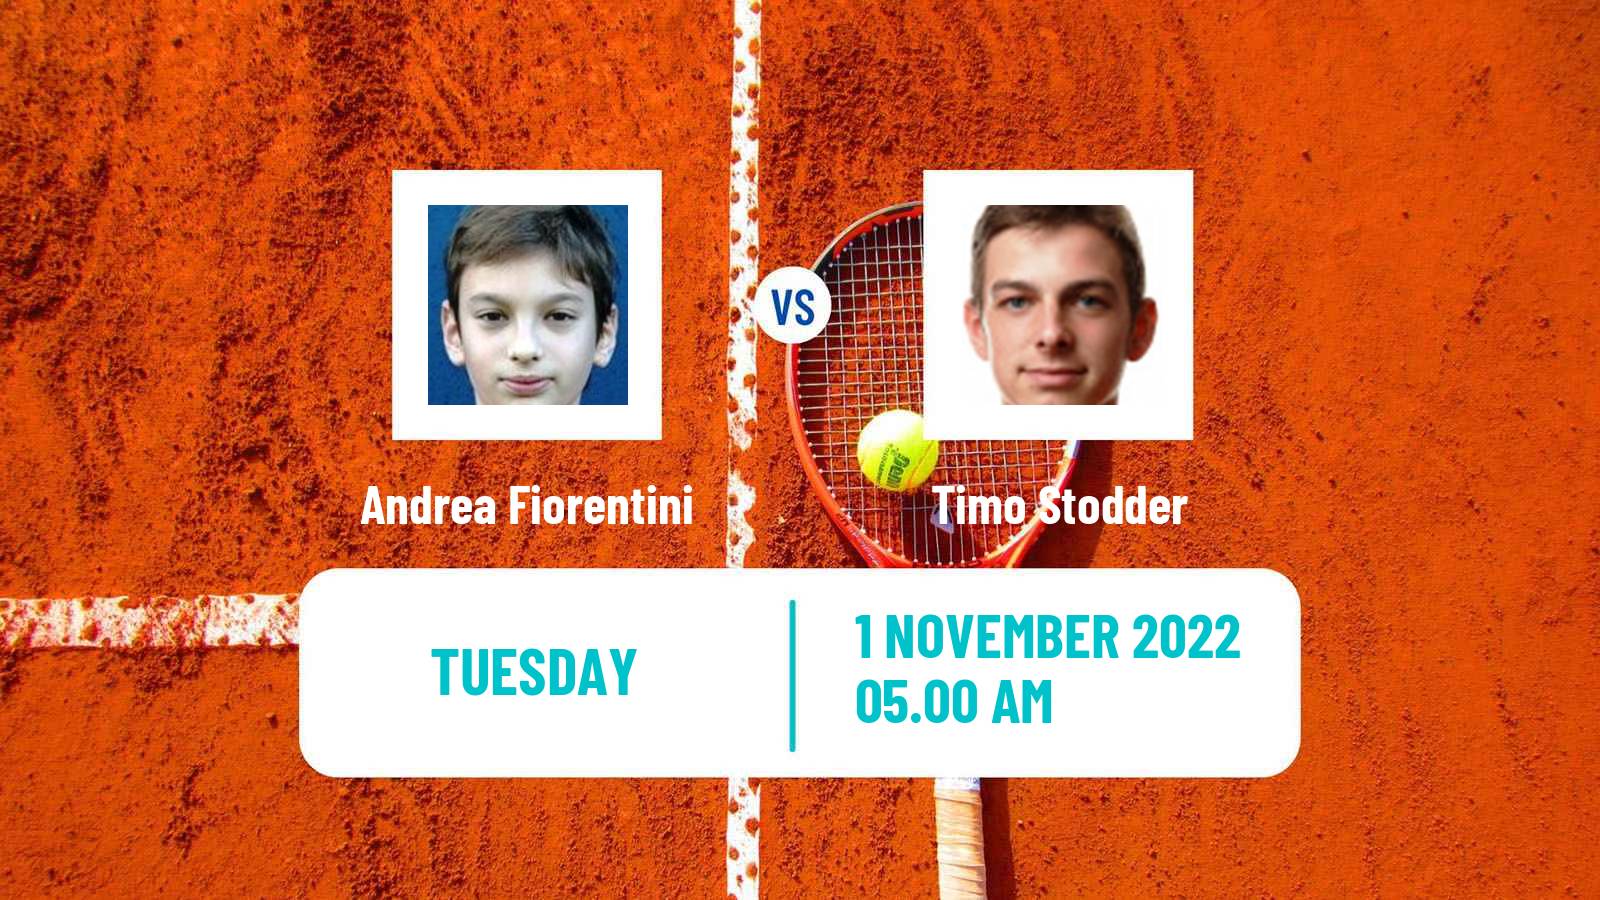 Tennis ITF Tournaments Andrea Fiorentini - Timo Stodder